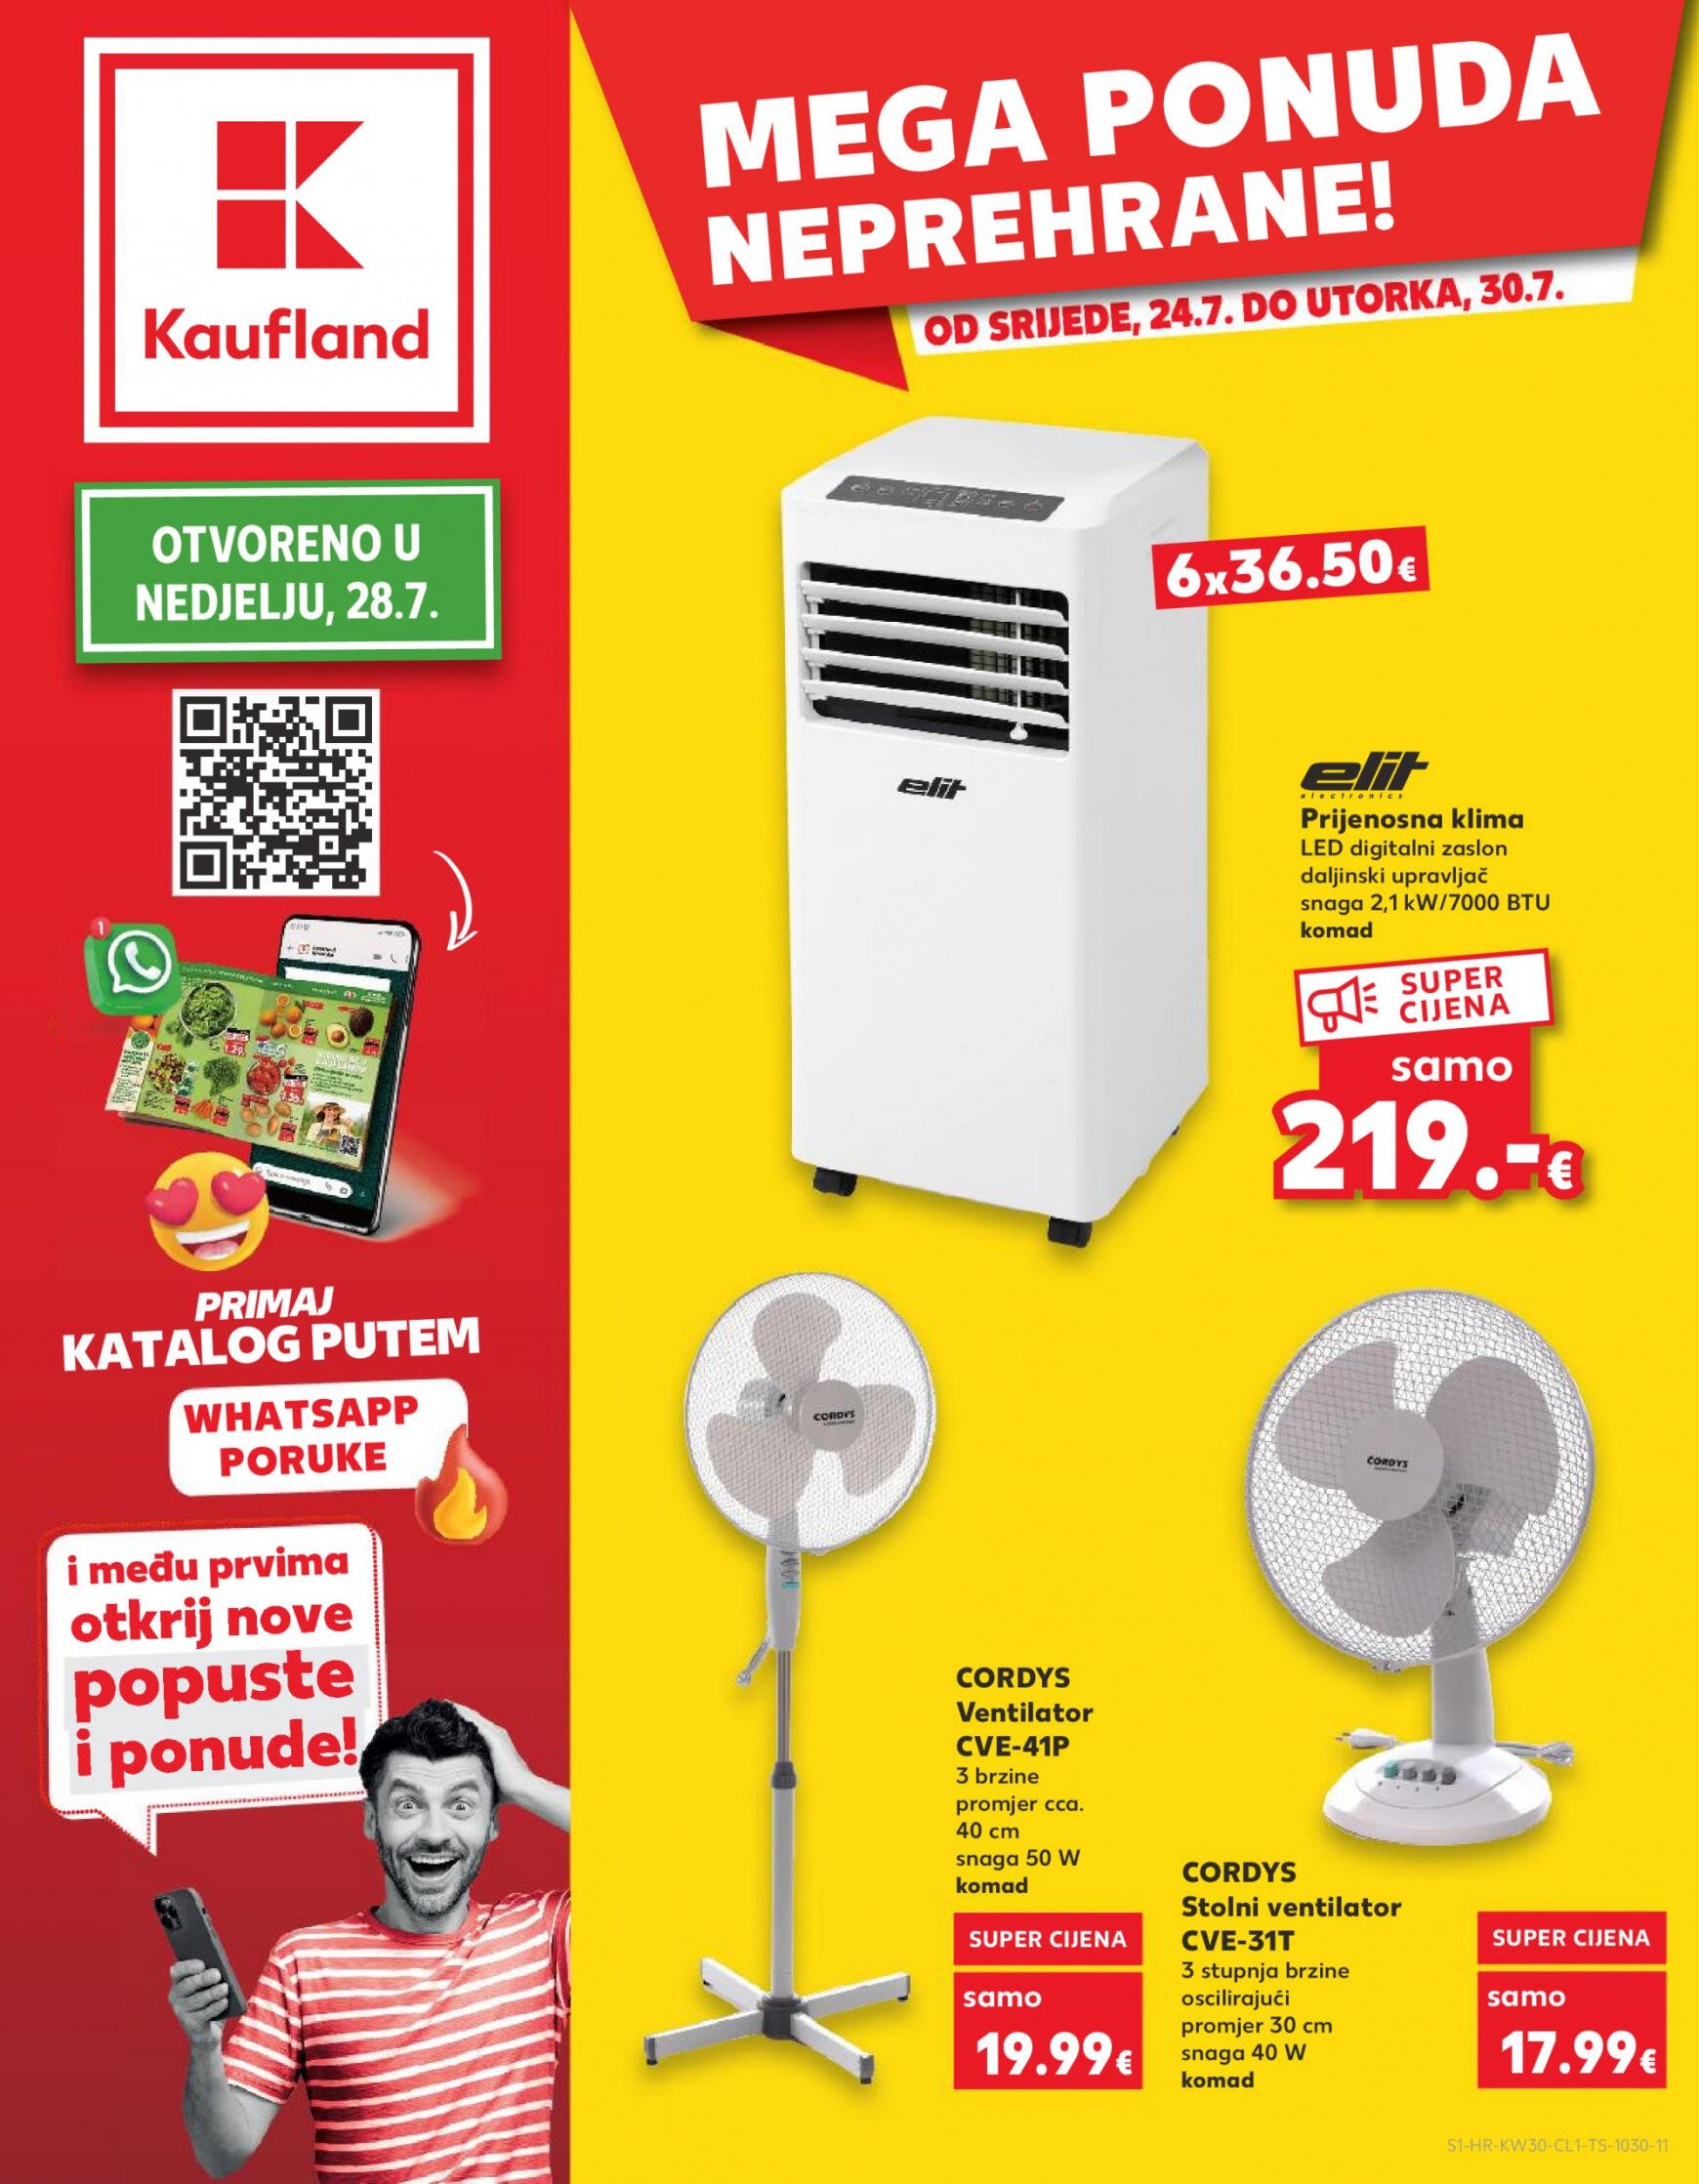 kaufland - Novi katalog Kaufland - Neprehrane 24.07. - 30.07.